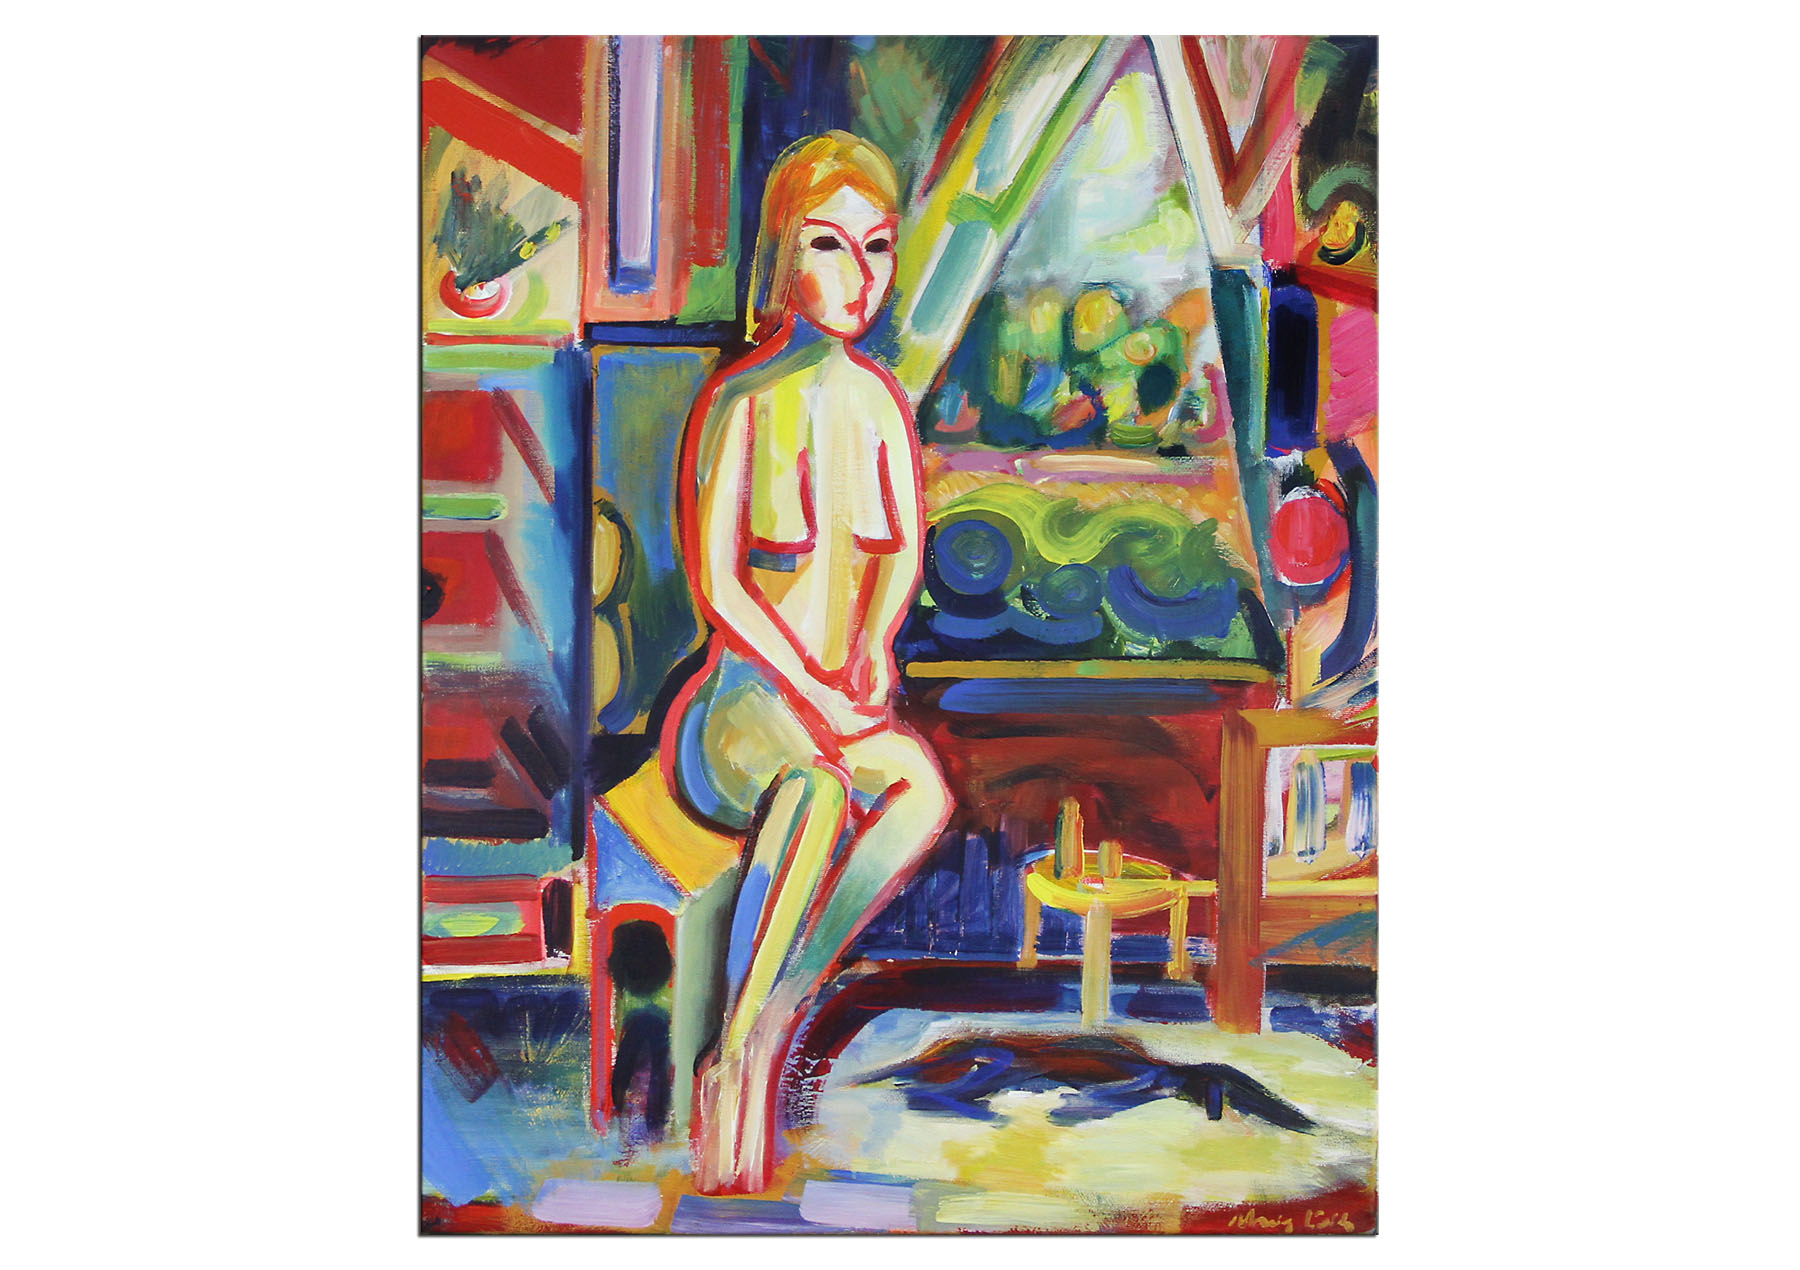 Expressionistische Ölmalerei, Maciej Cieśla: "Mädchen am Fenster"